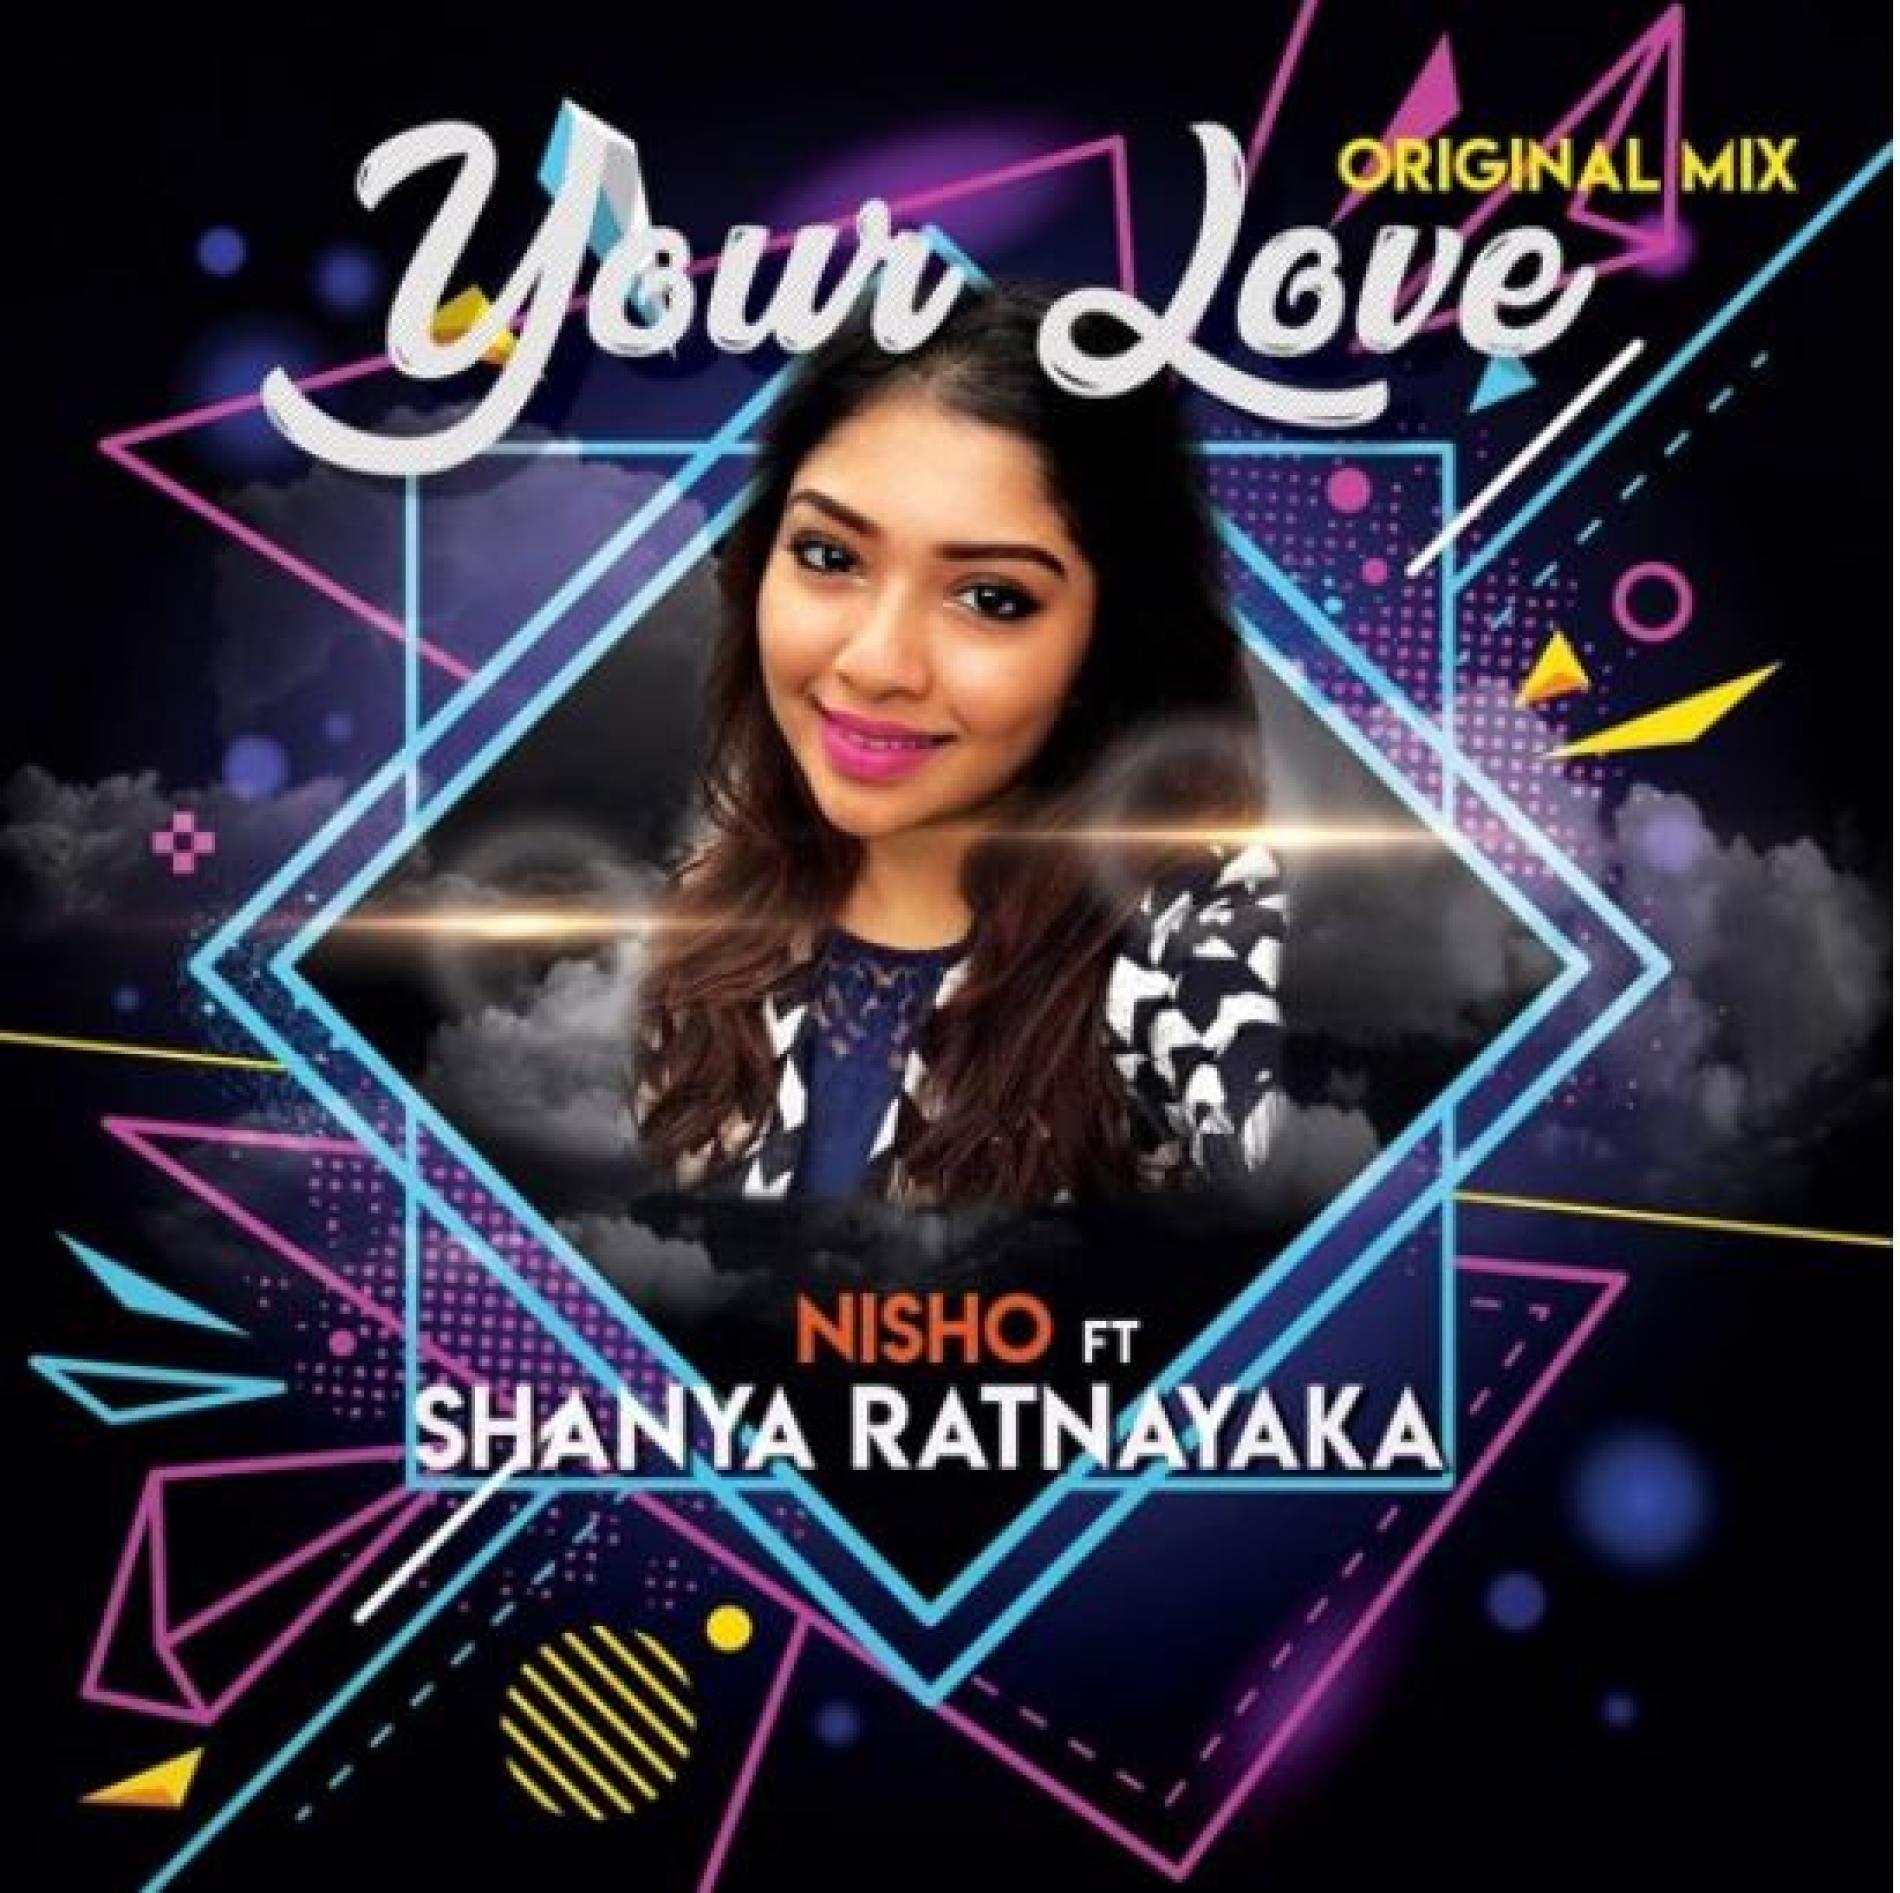 Nisho Ft Shanya Ratnayaka – Your Love (Original Mix)